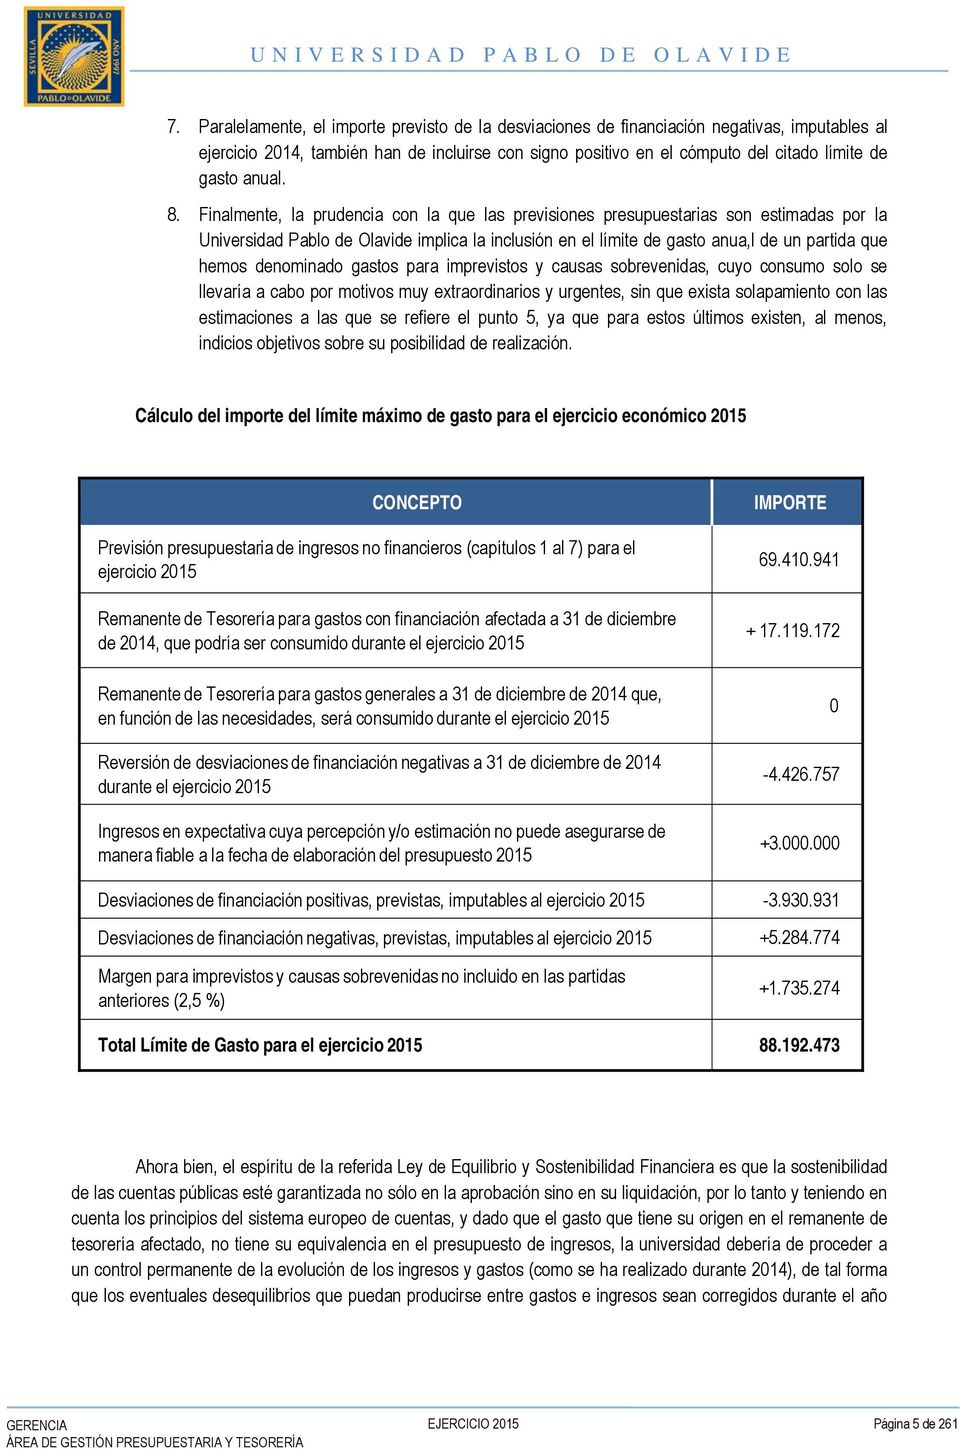 Finalmente, la prudencia con la que las previsiones presupuestarias son estimadas por la Universidad Pablo de Olavide implica la inclusión en el límite de gasto anua,l de un partida que hemos